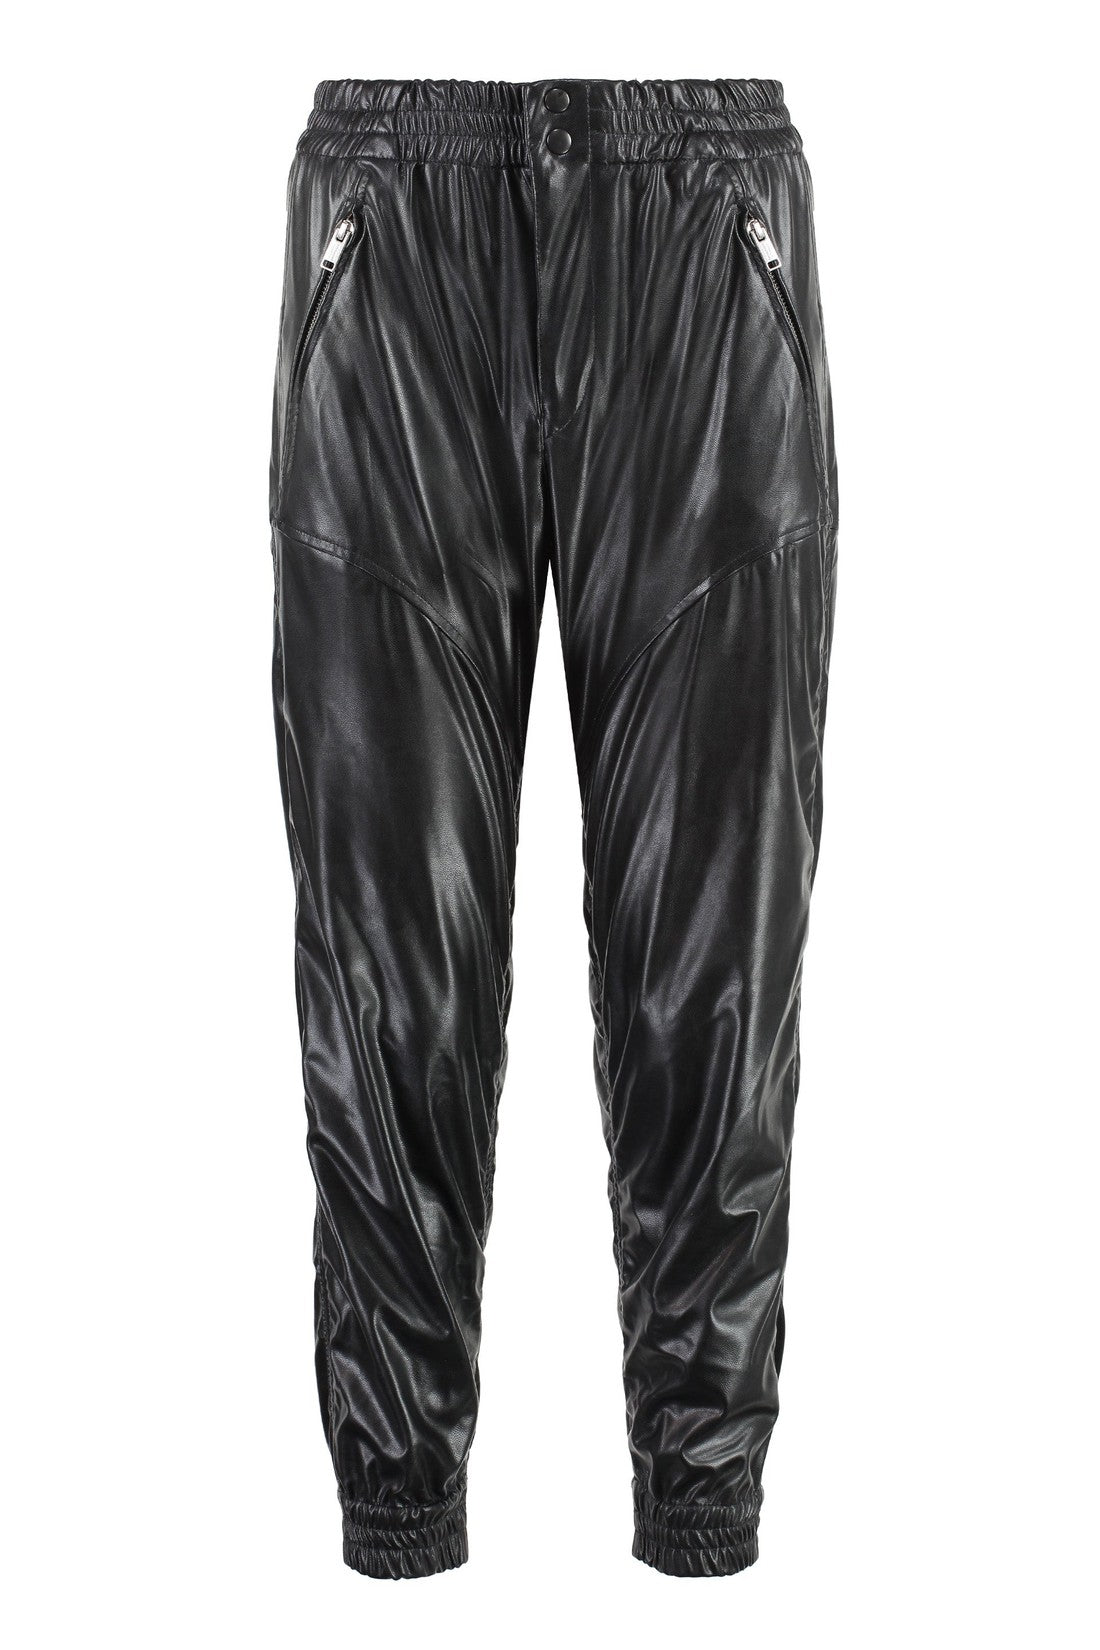 Marant étoile-OUTLET-SALE-Bolena faux leather trousers-ARCHIVIST